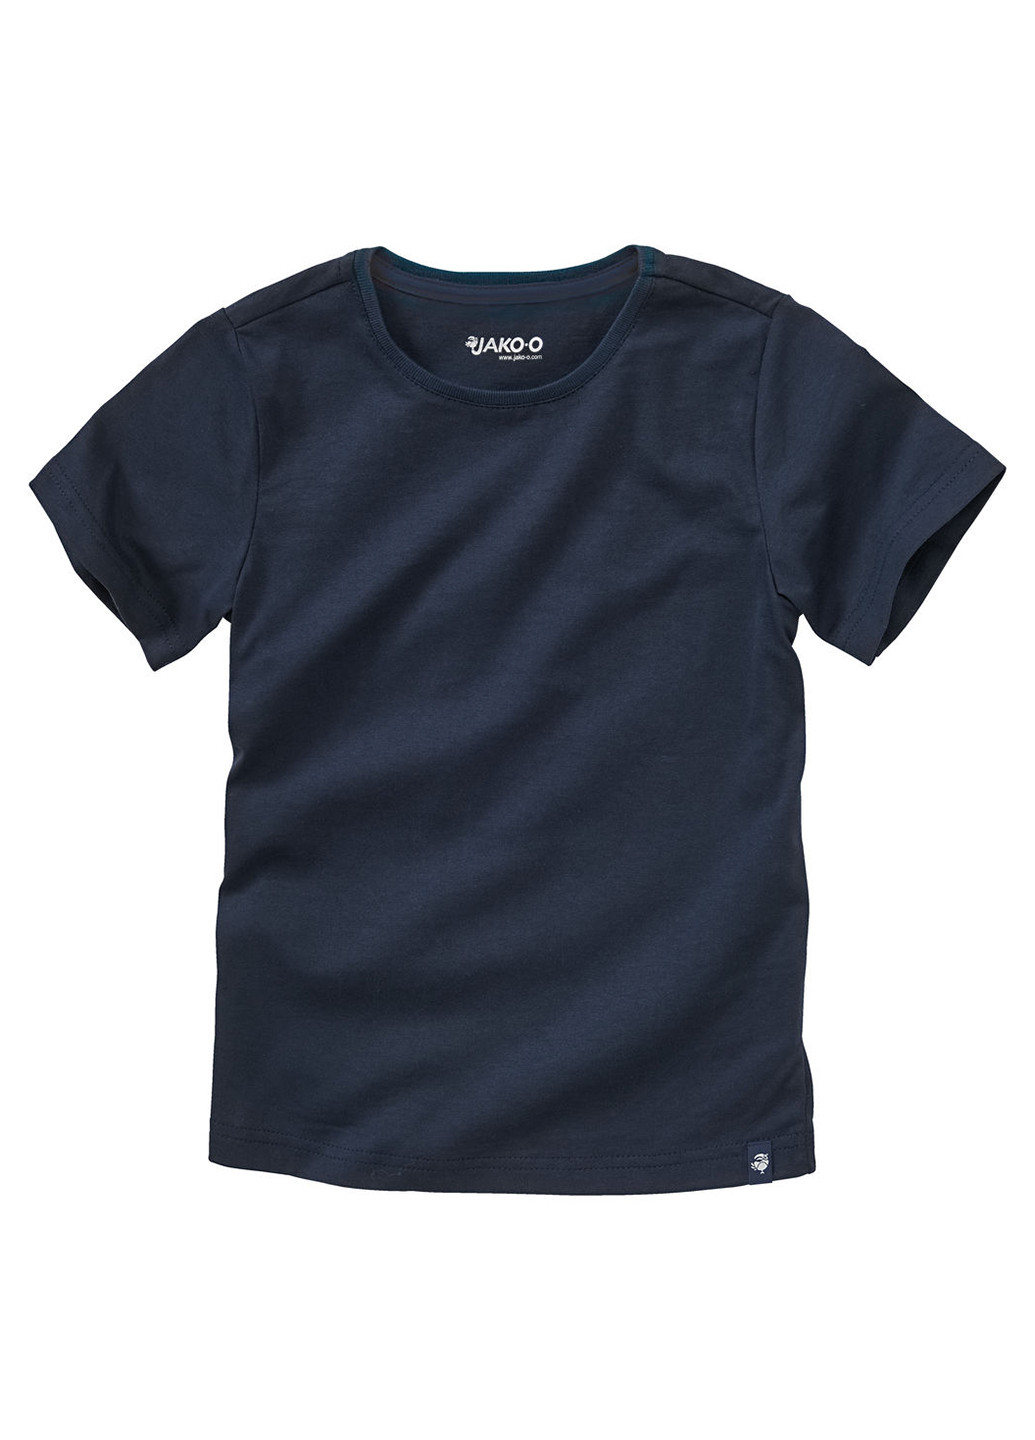 Темно-синяя летняя футболка Jako-O